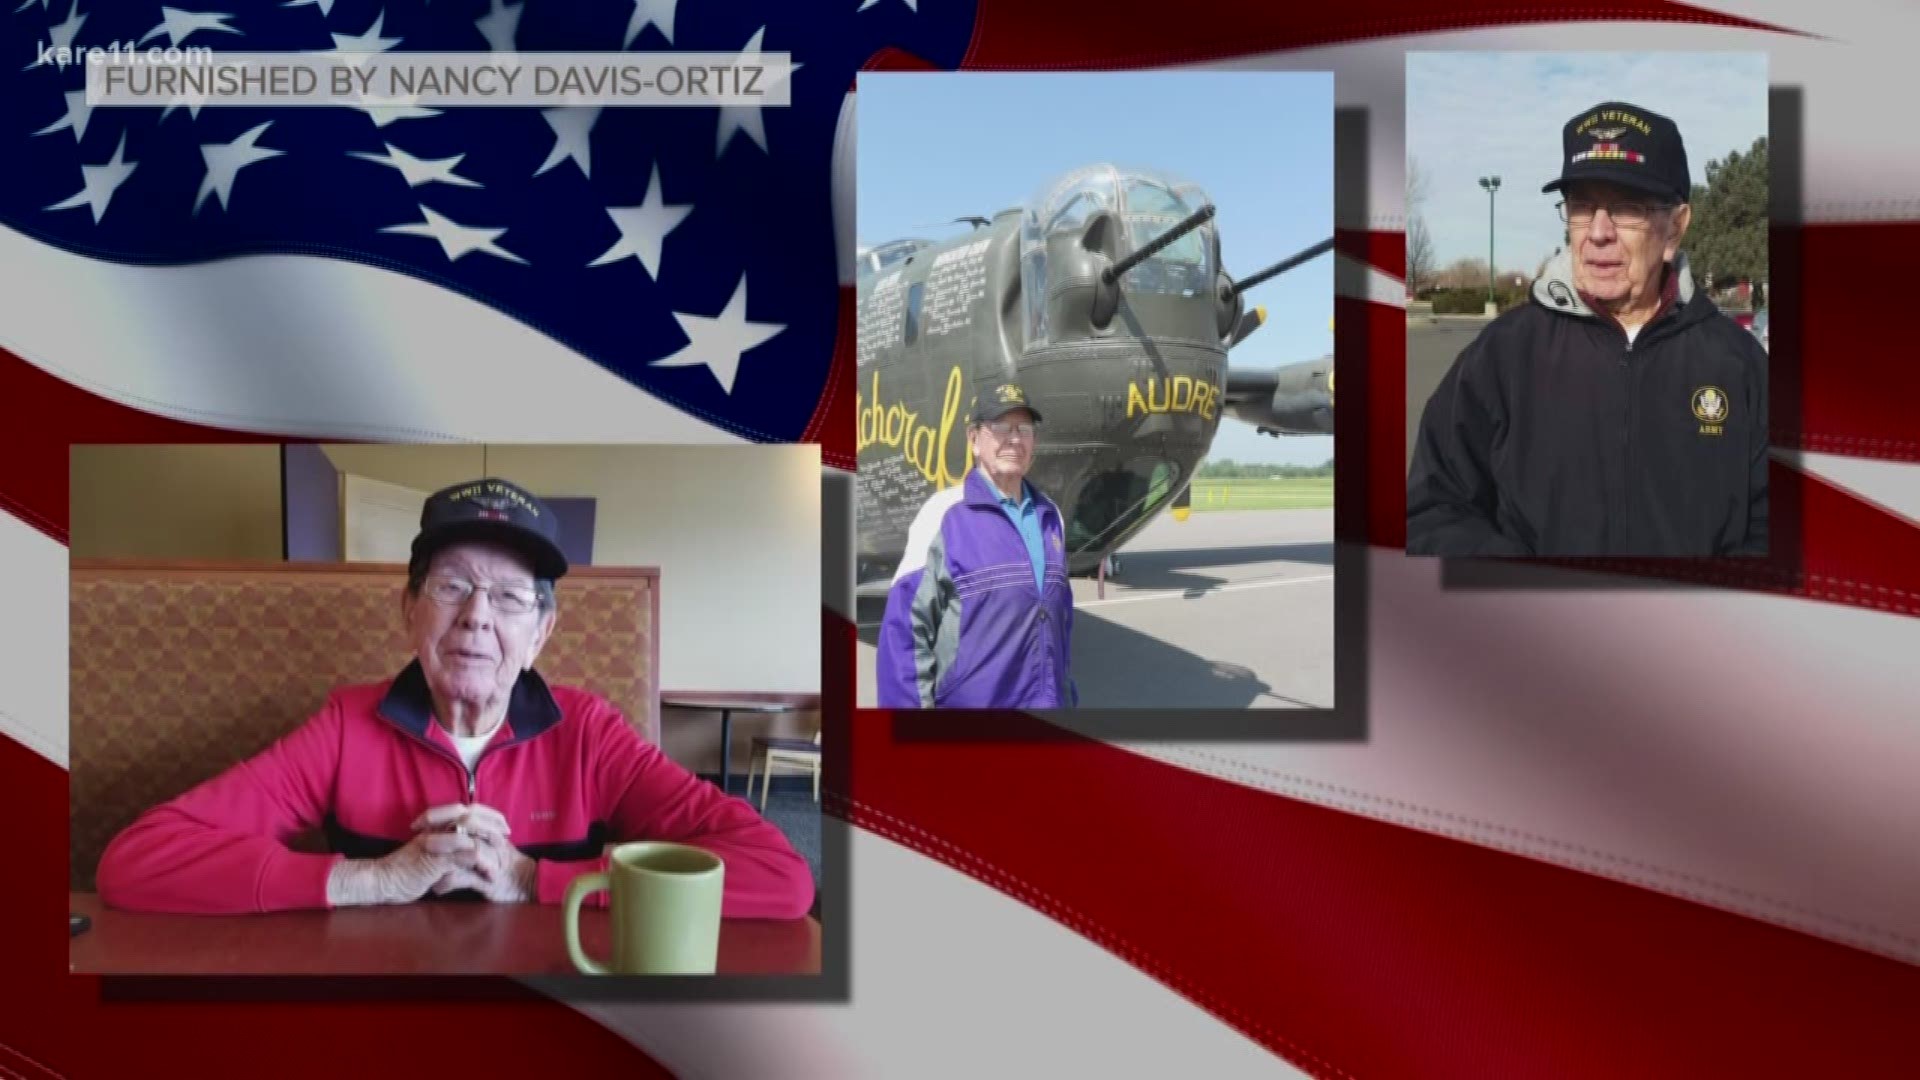 Jana Shortal honors WWII veteran Corporal Donald Davis